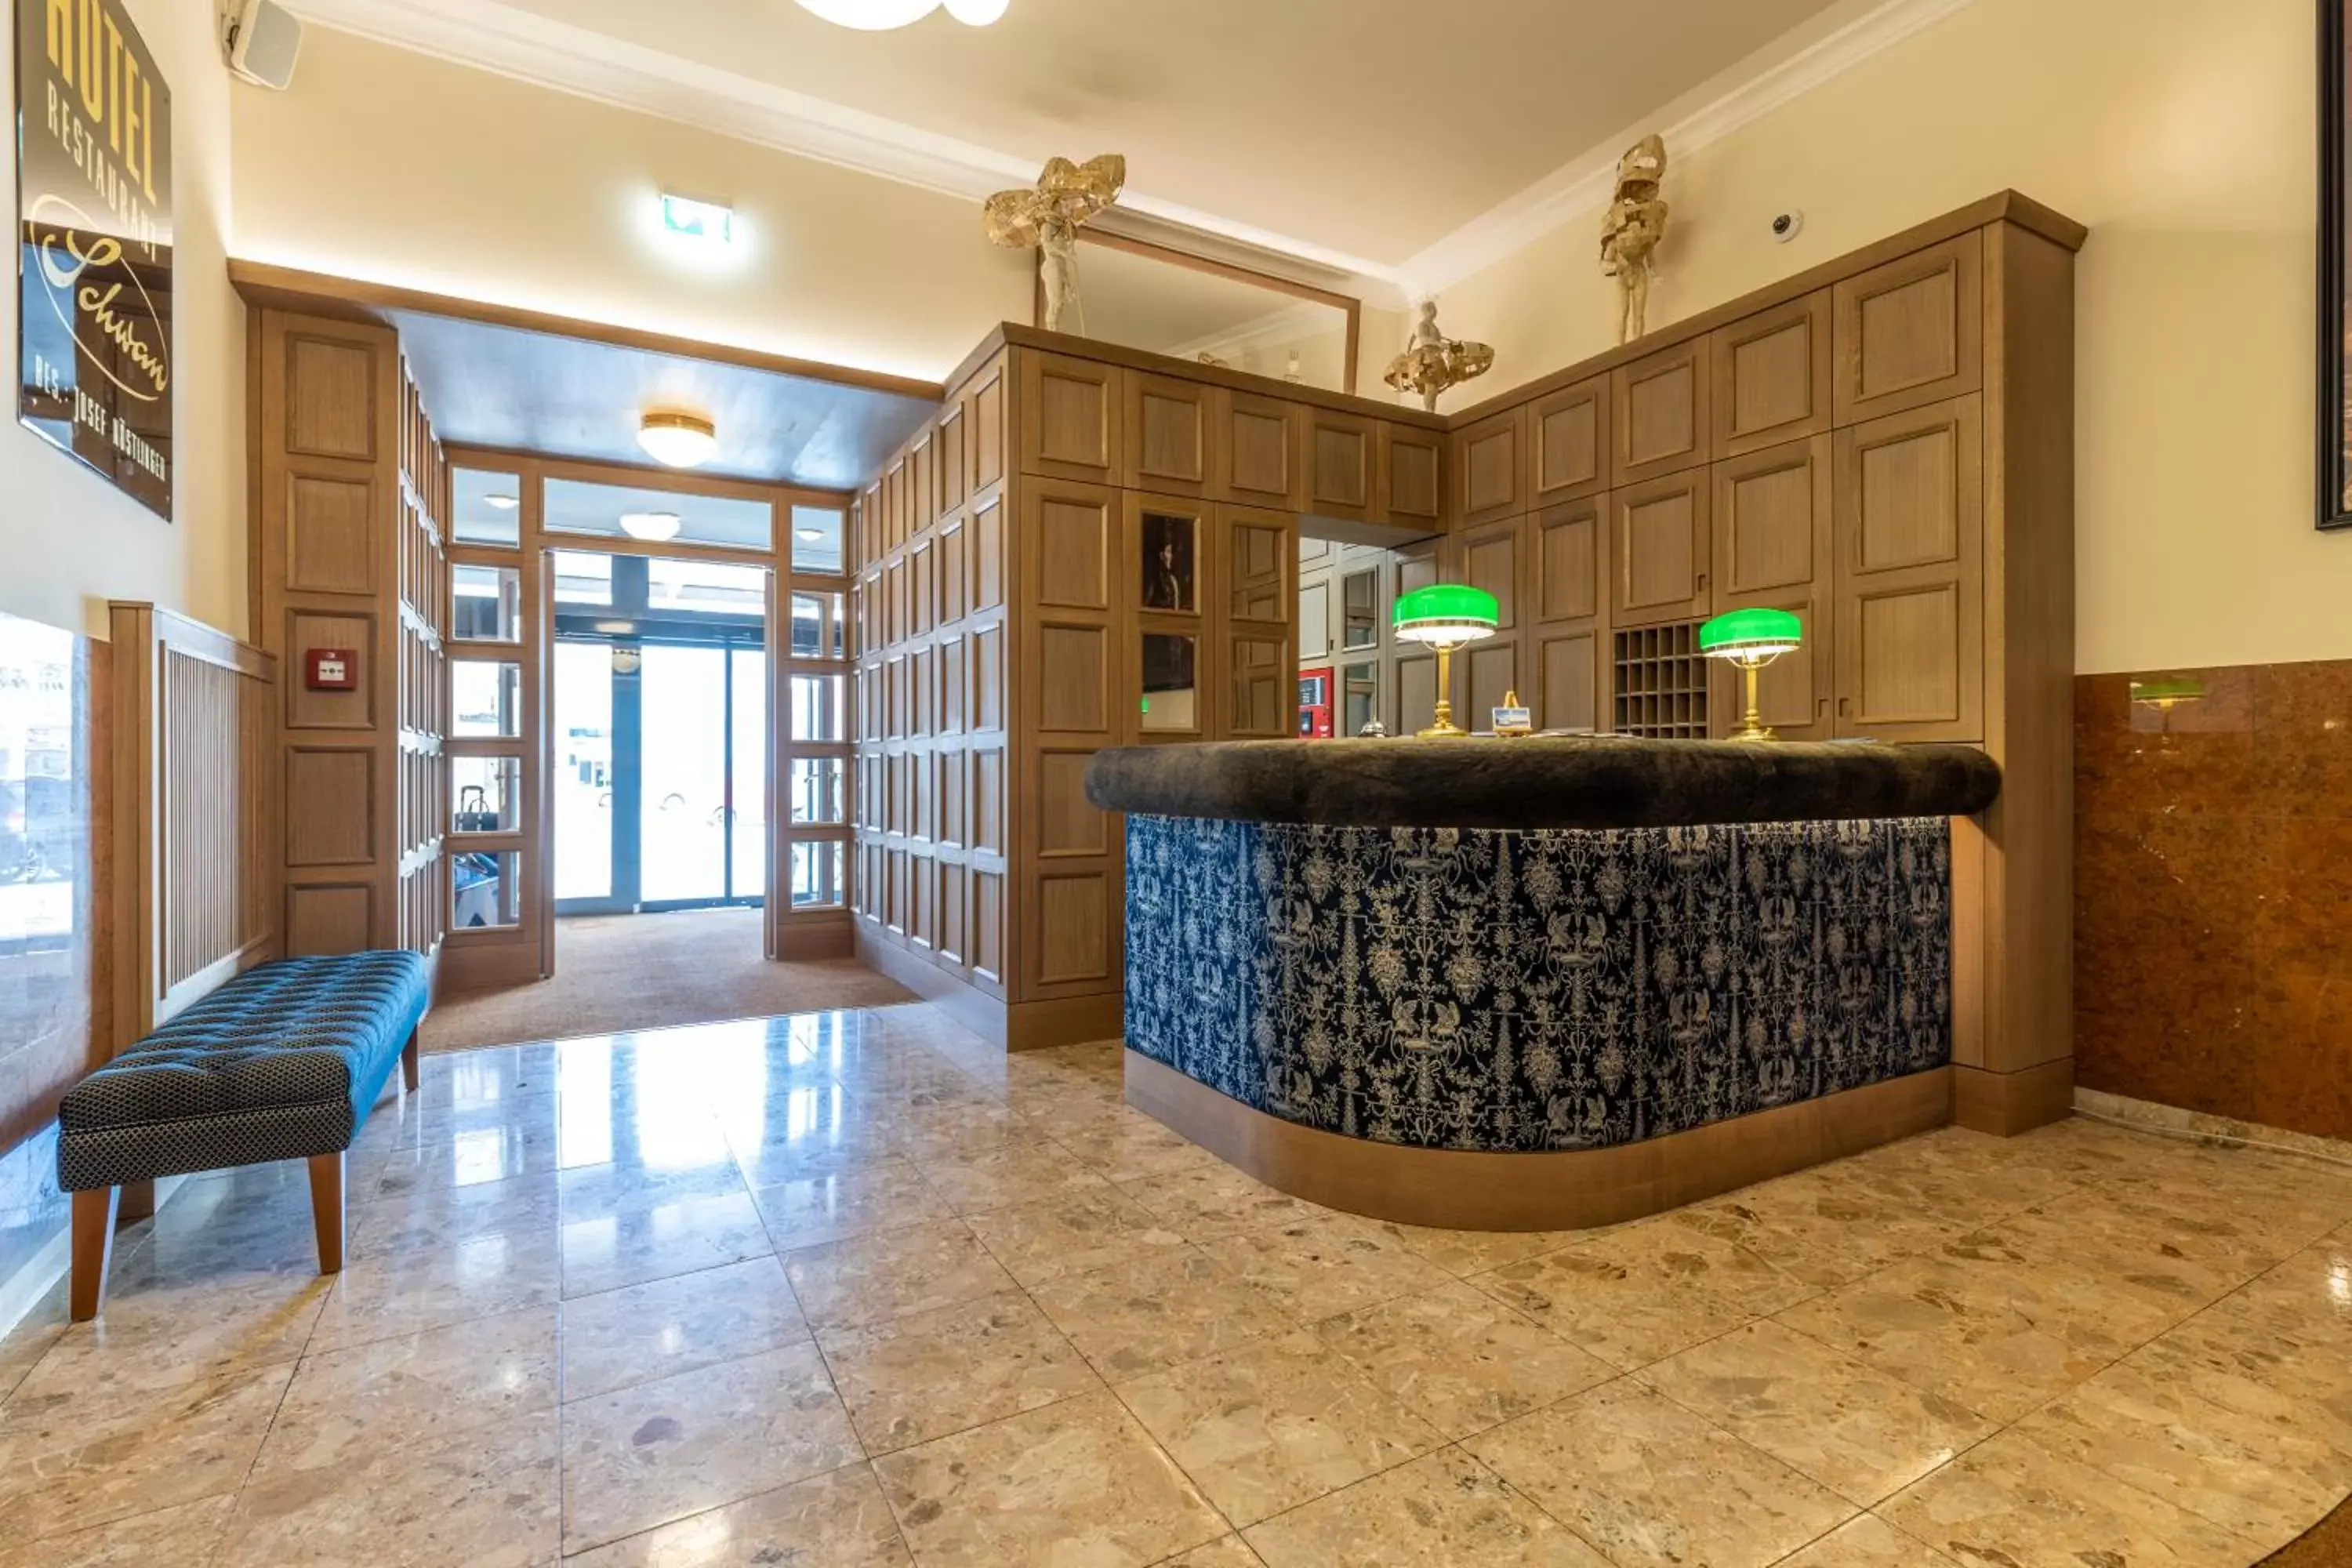 Lobby or reception, Lobby/Reception in Seehotel Schwan